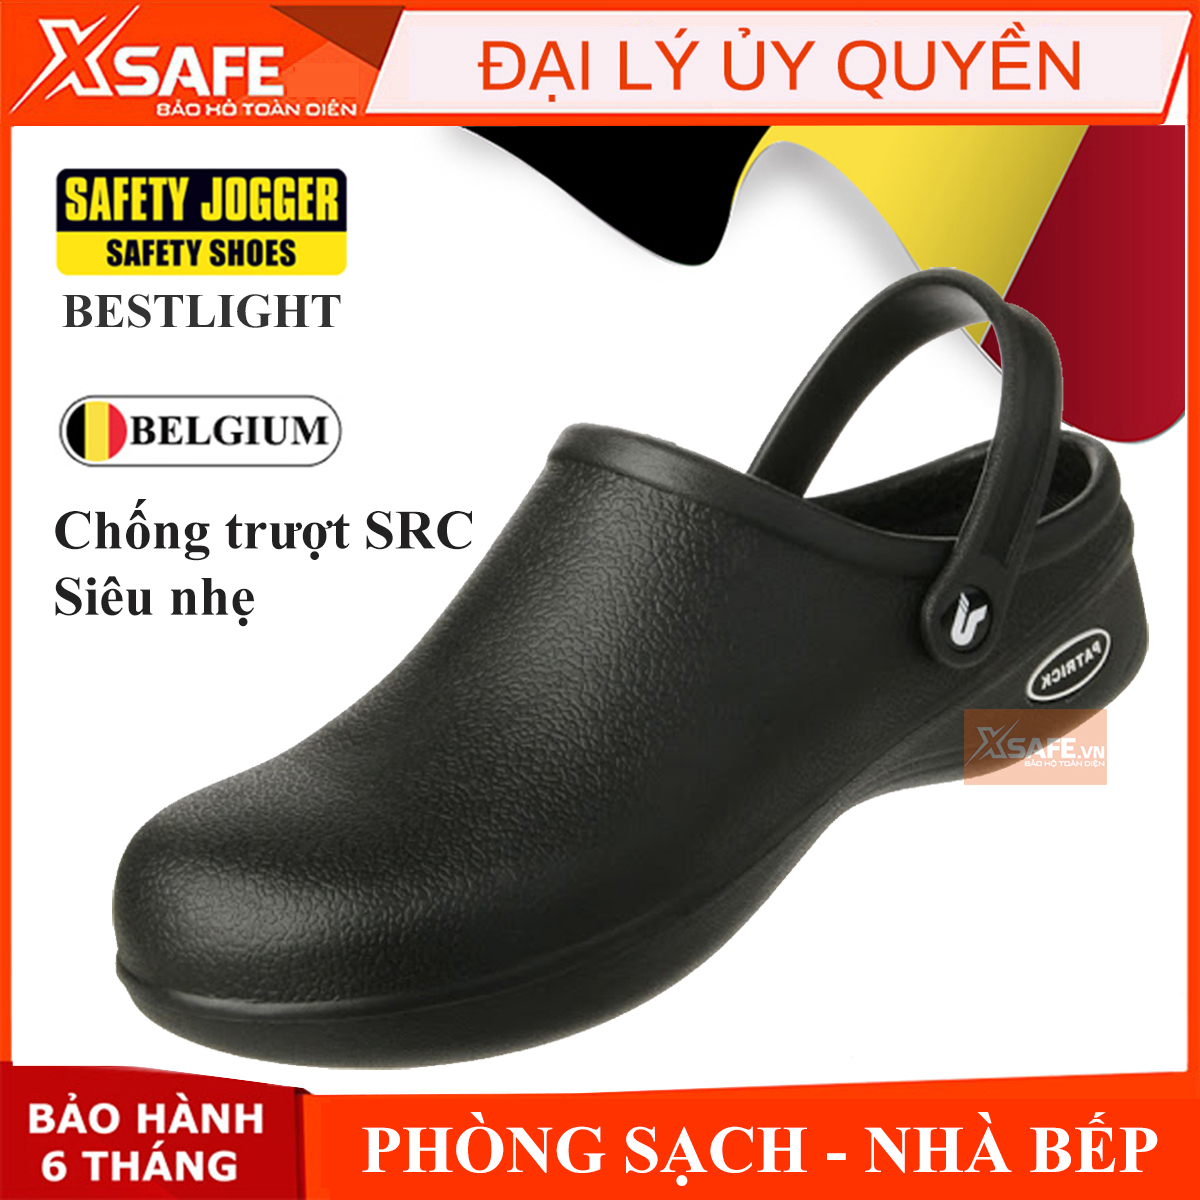 Giày chống trượt Jogger Bestlight siêu nhẹ tiêu chuẩn EN chuyên dụng cho giày bảo hộ phòng sạch bệnh viện nhà bếp (đen)